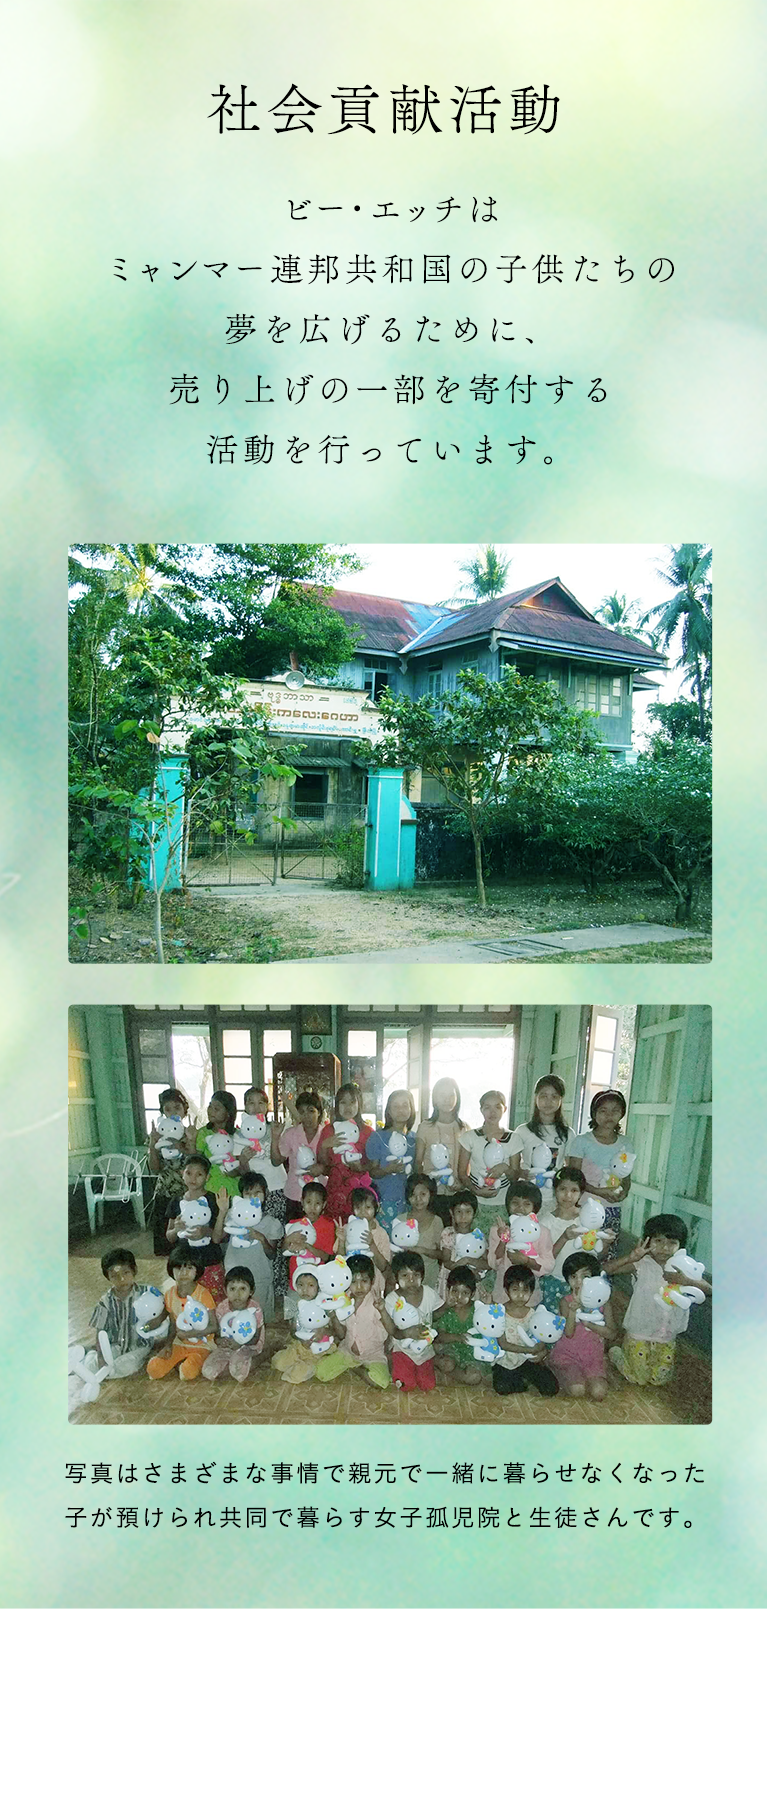 社会貢献活動 ビー・エッチはミャンマー連邦共和国の子供たちの夢を広げるために、売り上げの一部を寄付する活動を行っています。